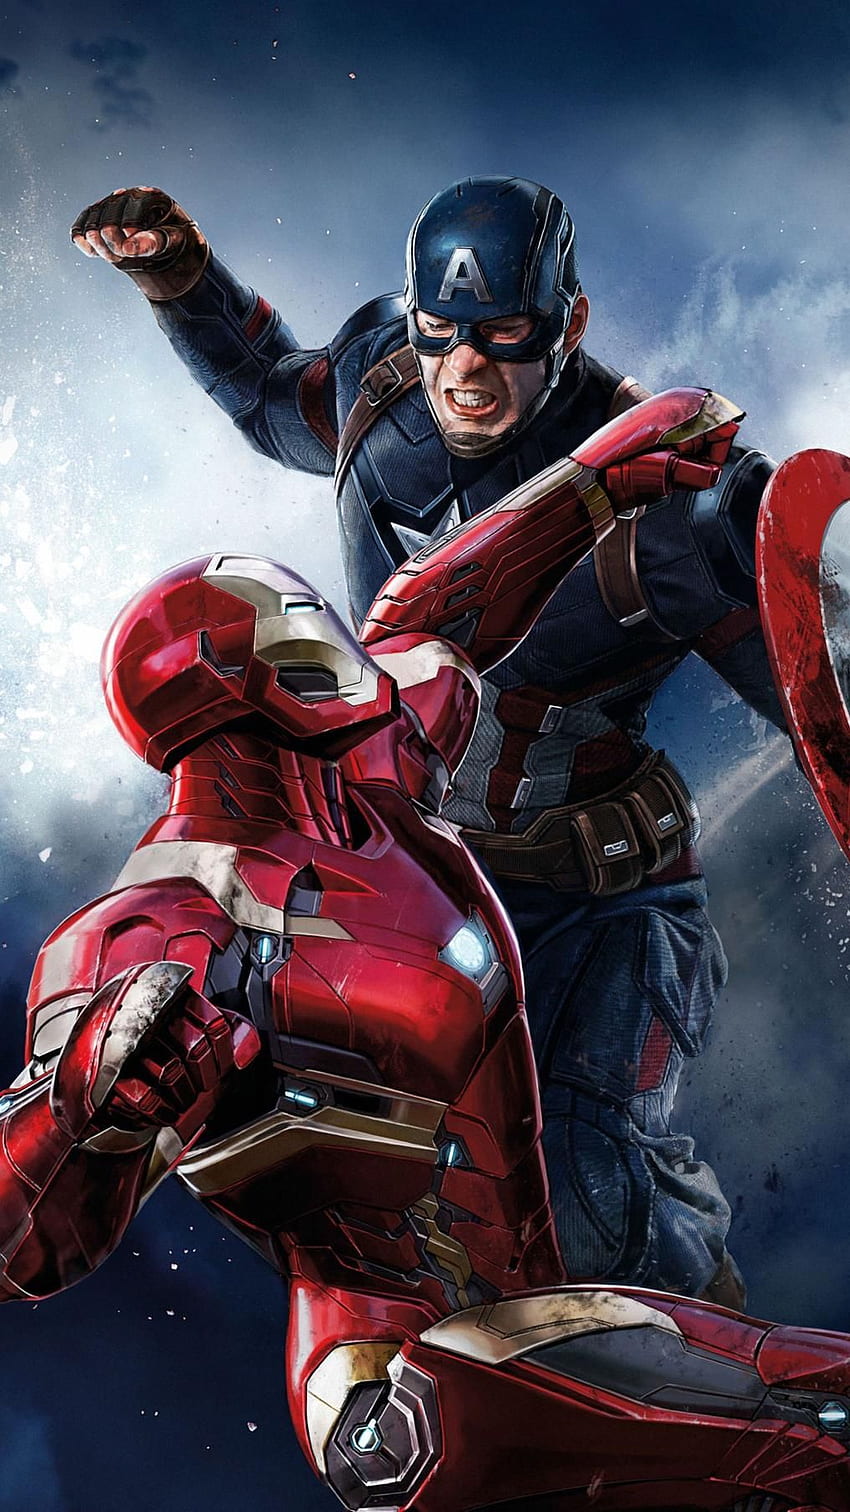 Vengadores: Endgame (2019) Teléfono. Cinemanía. Carteles de superhéroes de Marvel, Cómics de Marvel, Iron man vs Capitán América, Capitán América vs Batman fondo de pantalla del teléfono